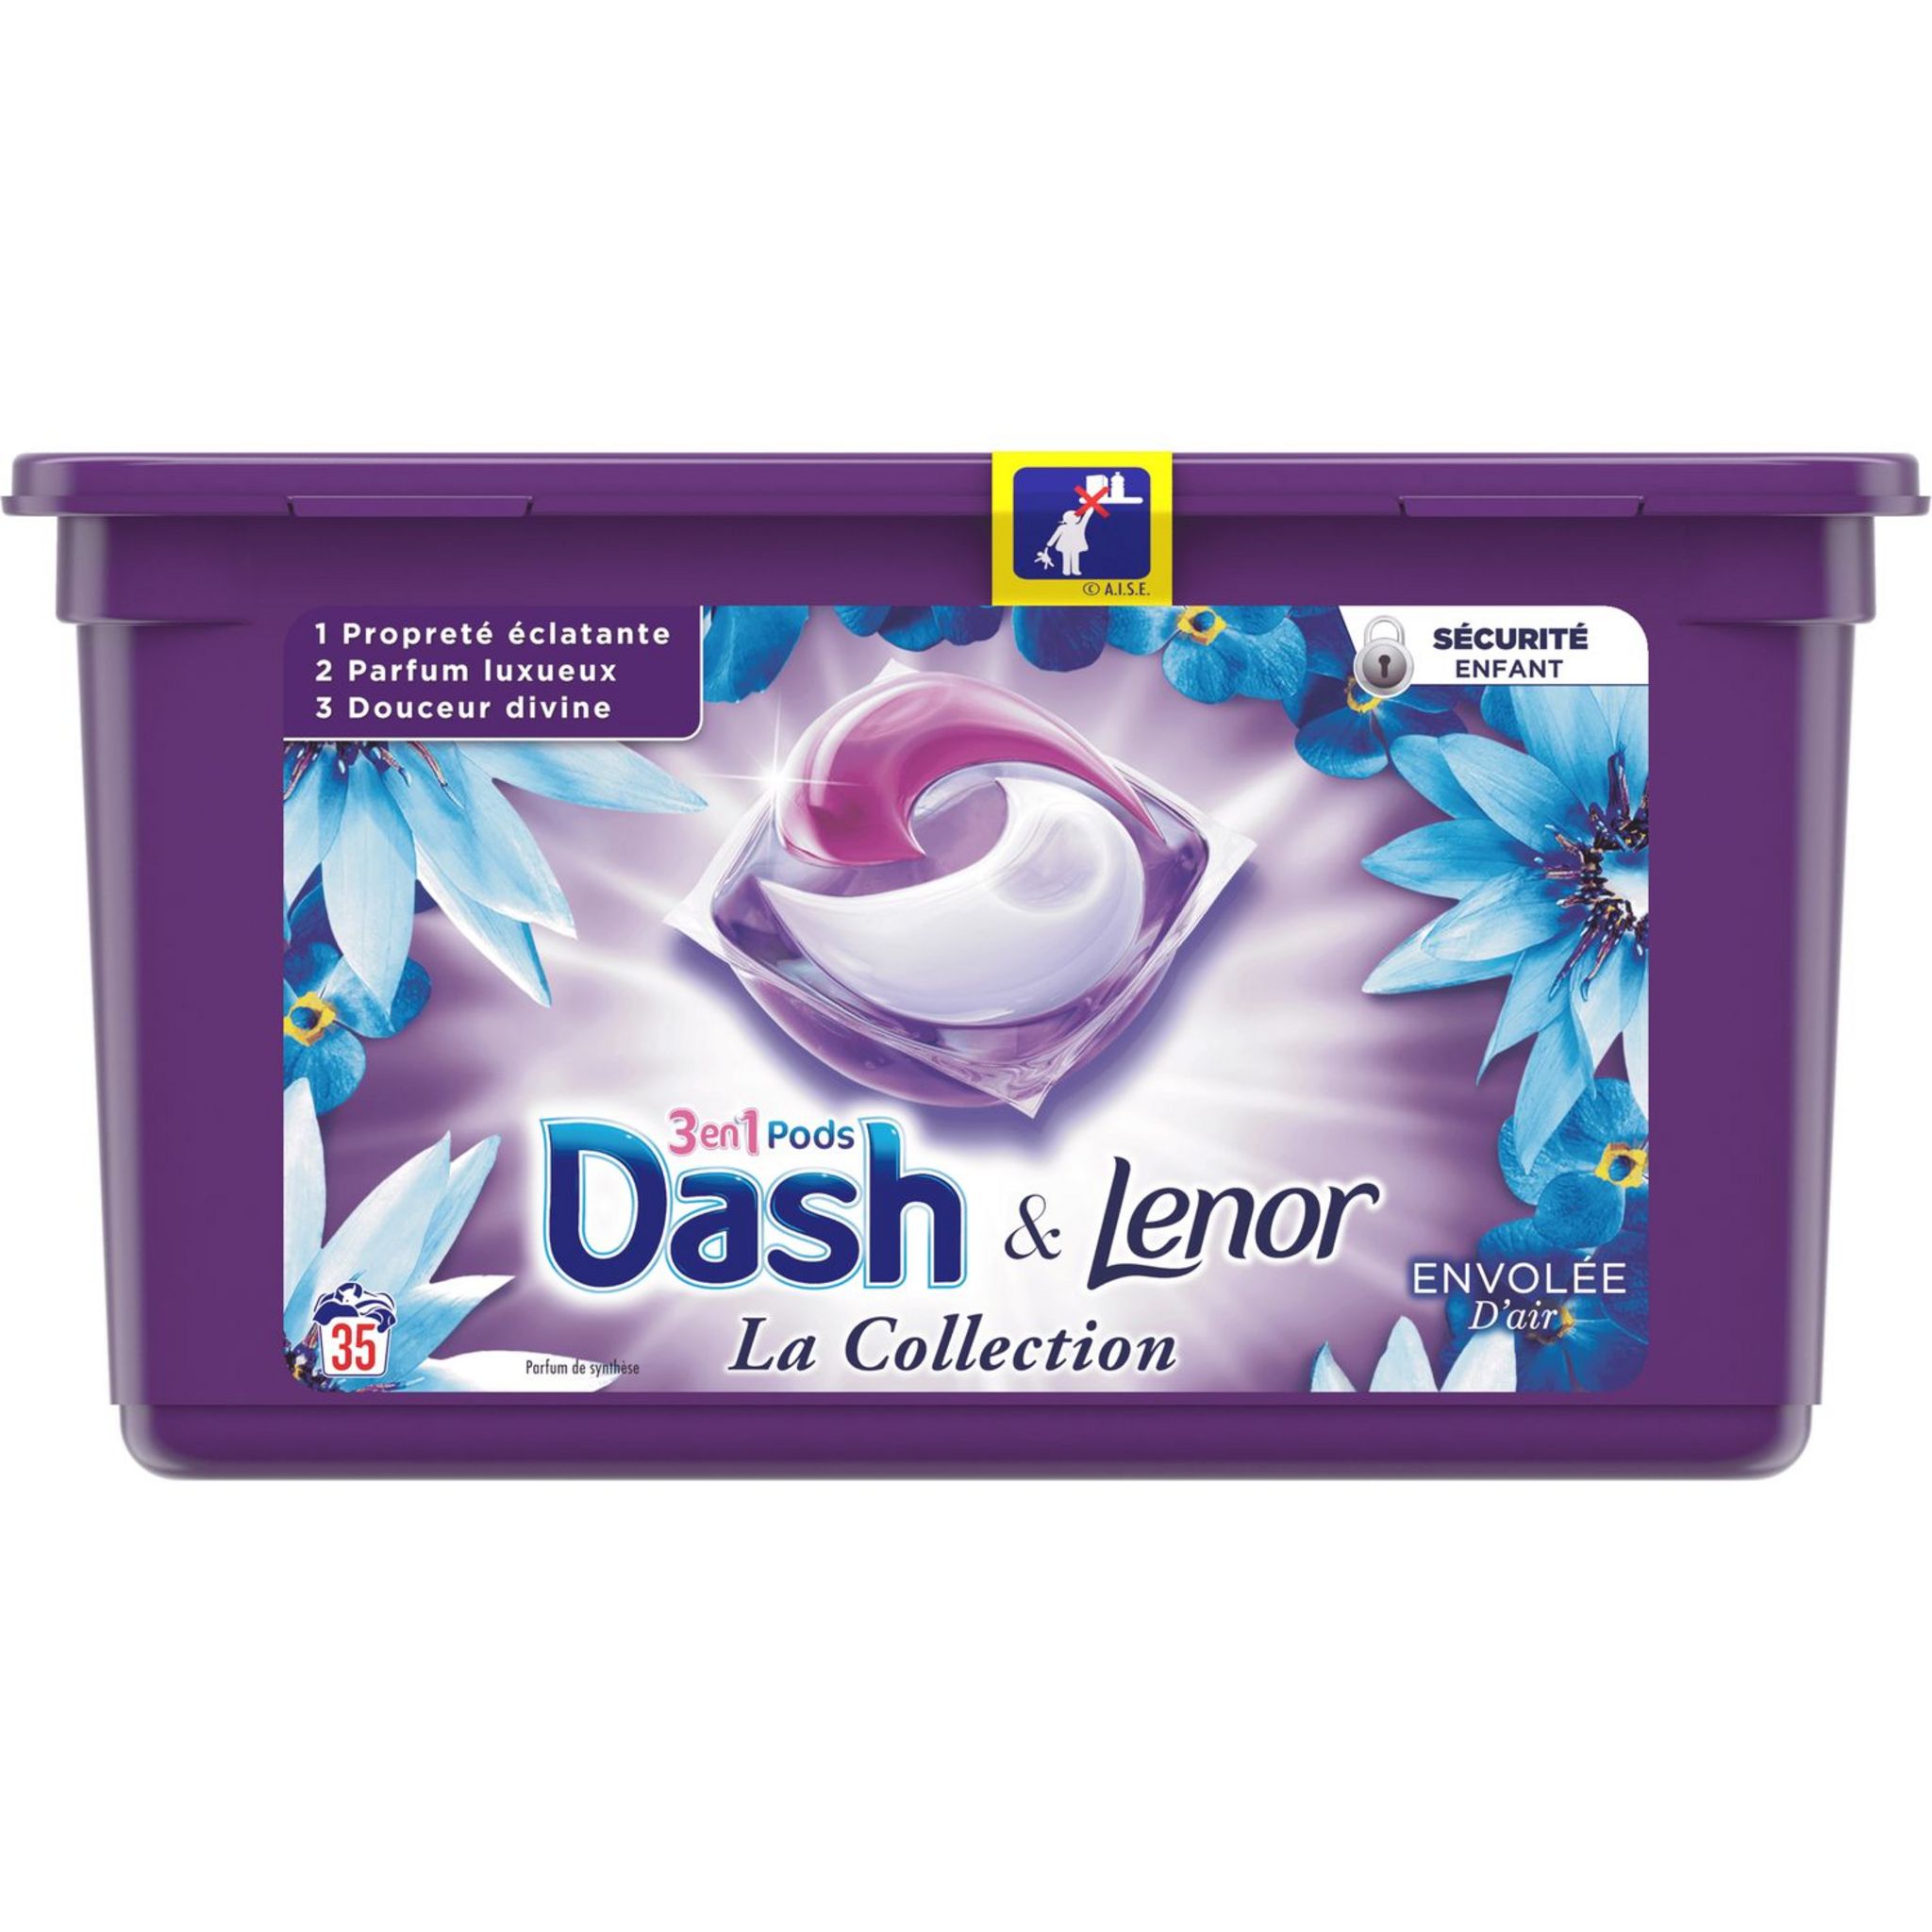 Prime : capsules de lessive Dash 2en1 à moitié prix